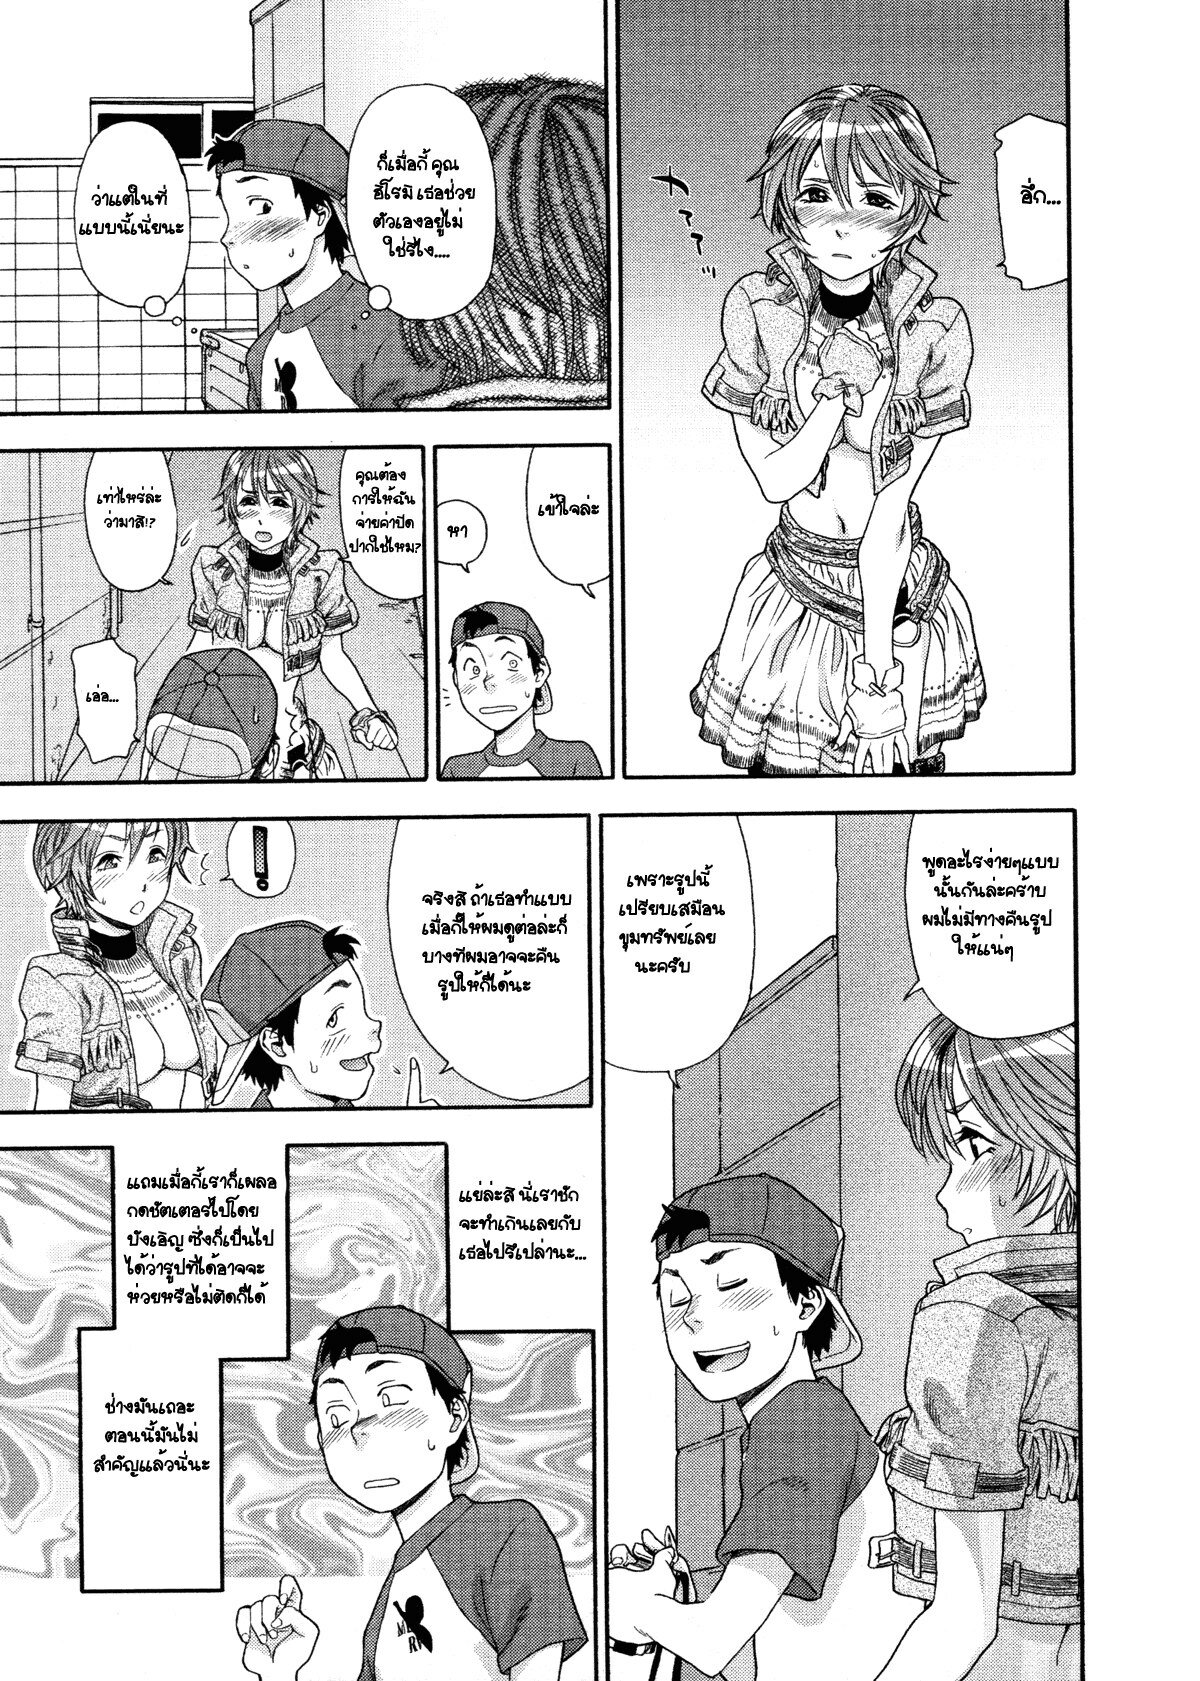 [Yamatogawa] COW GIRL =Aqua Bless chapter3= [Thai] page 7 full